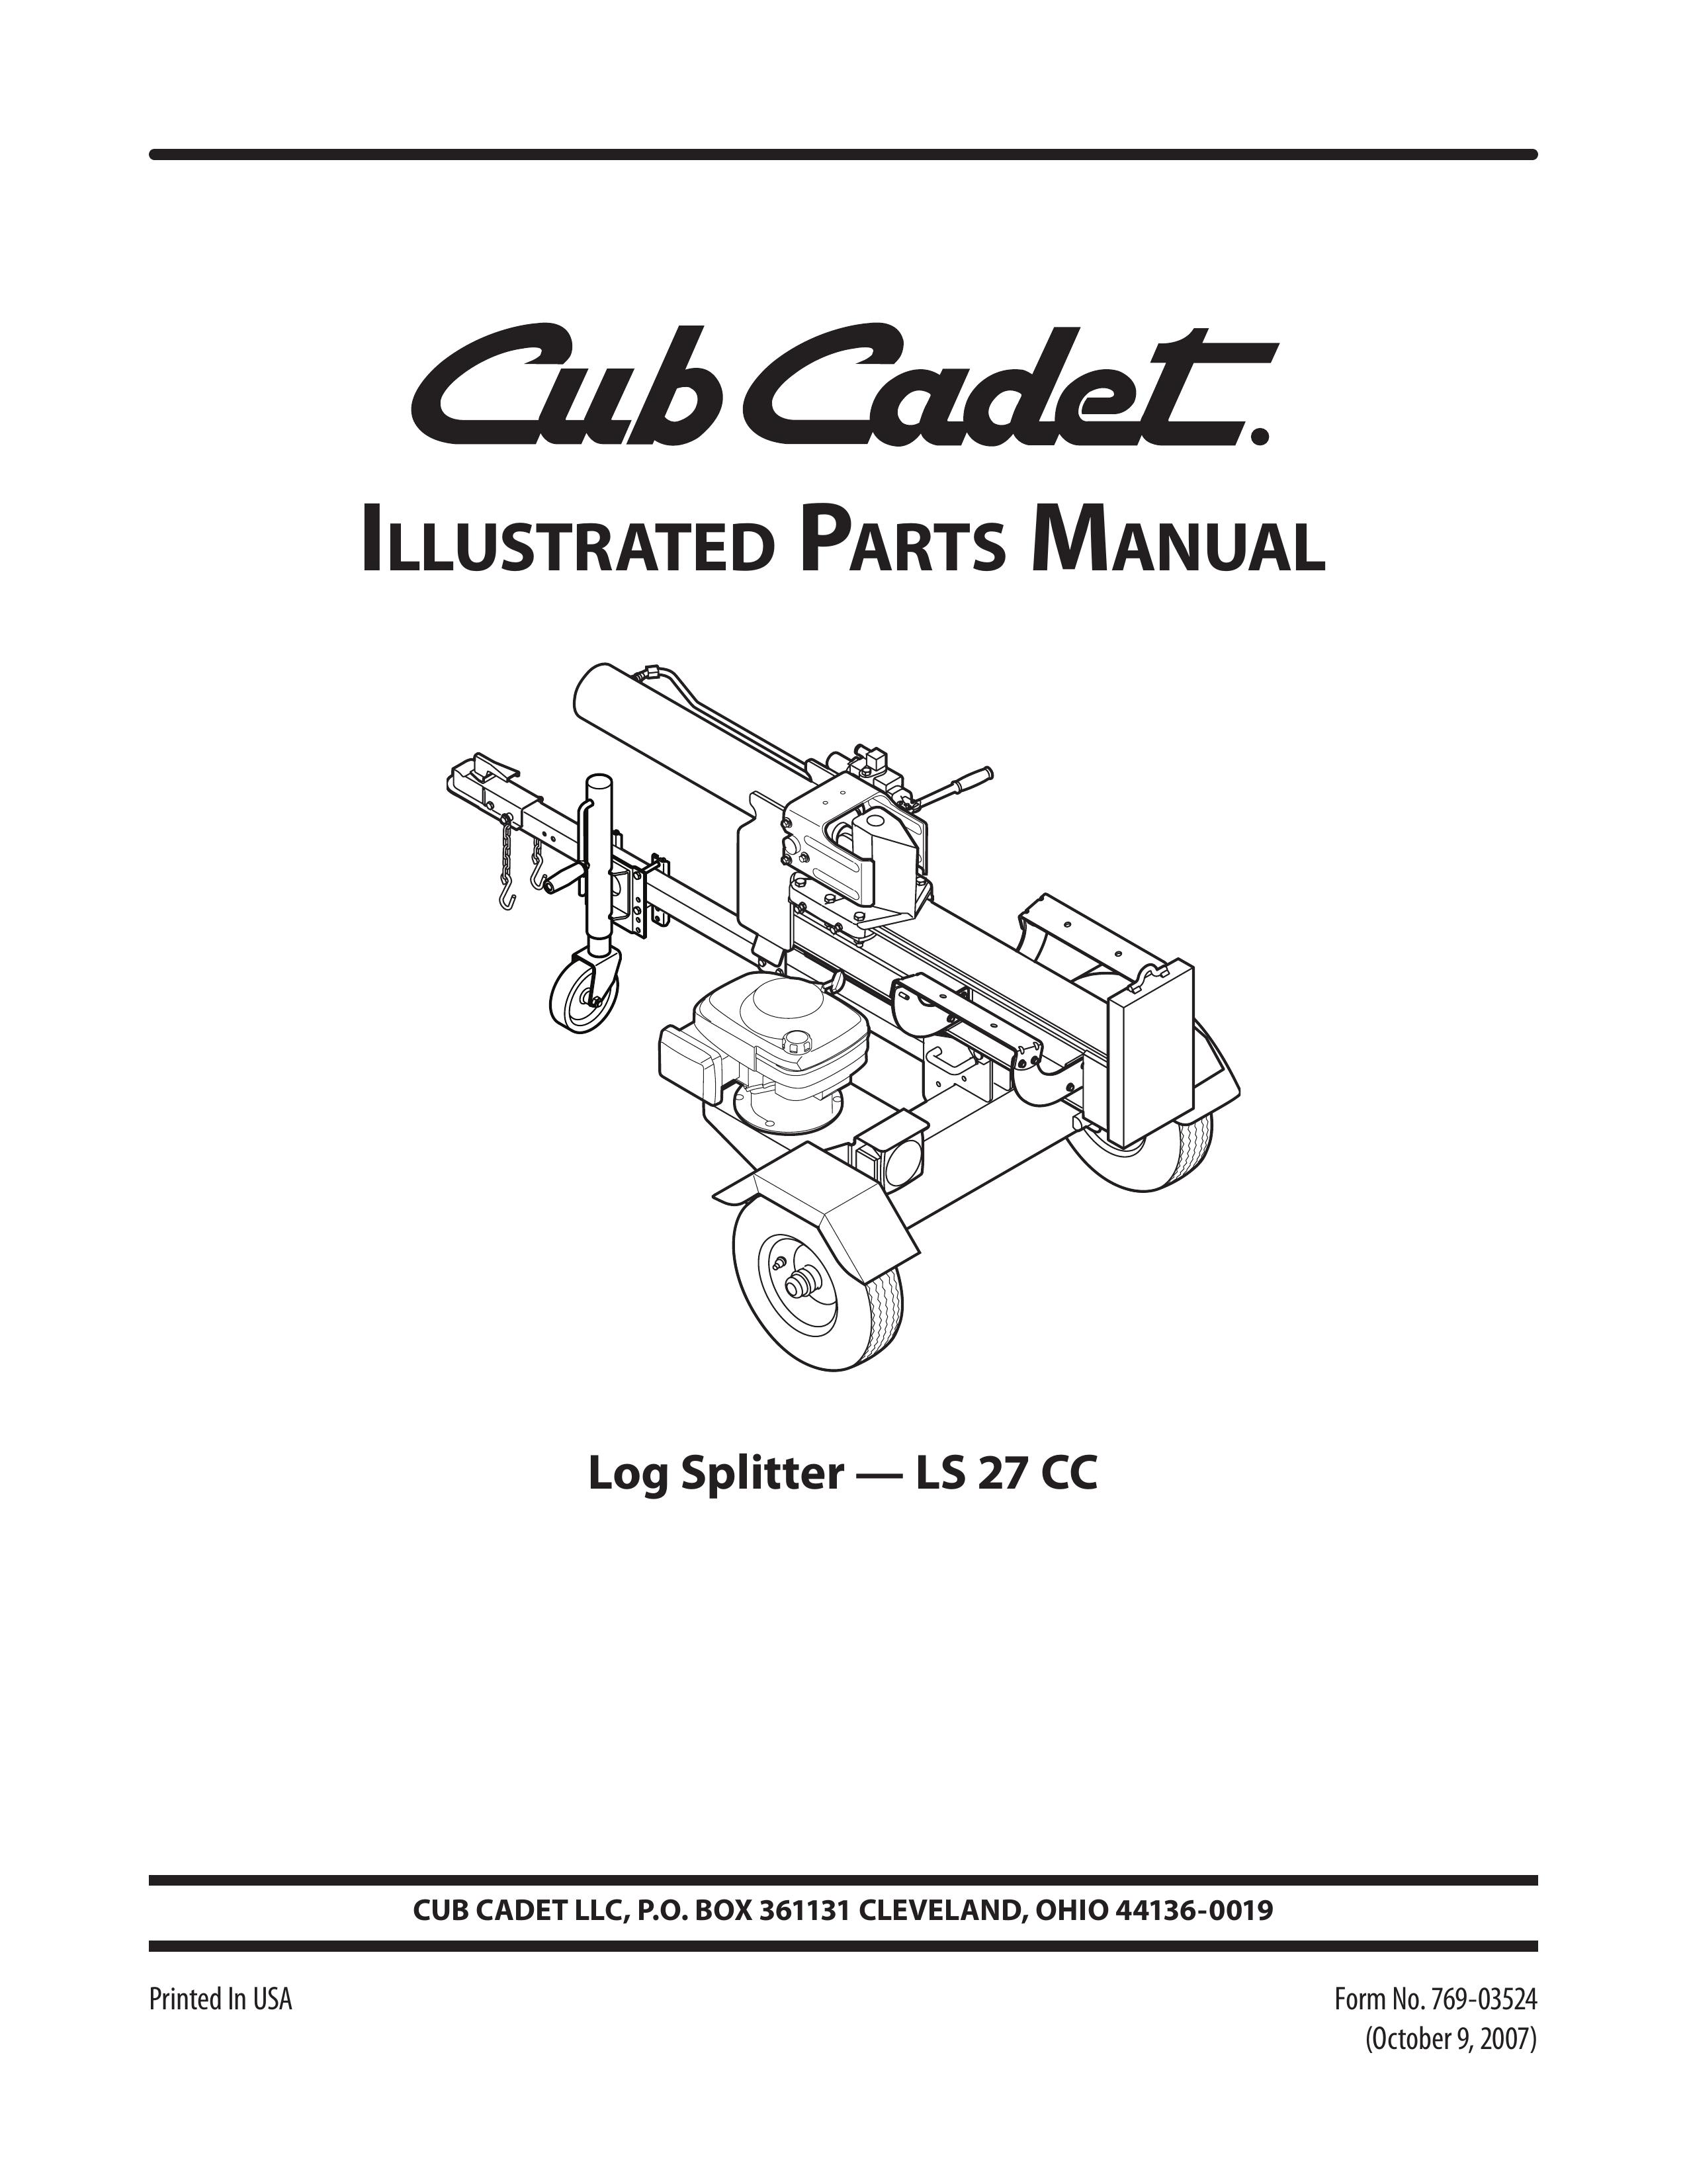 Cub Cadet LS 27 CC Log Splitter User Manual